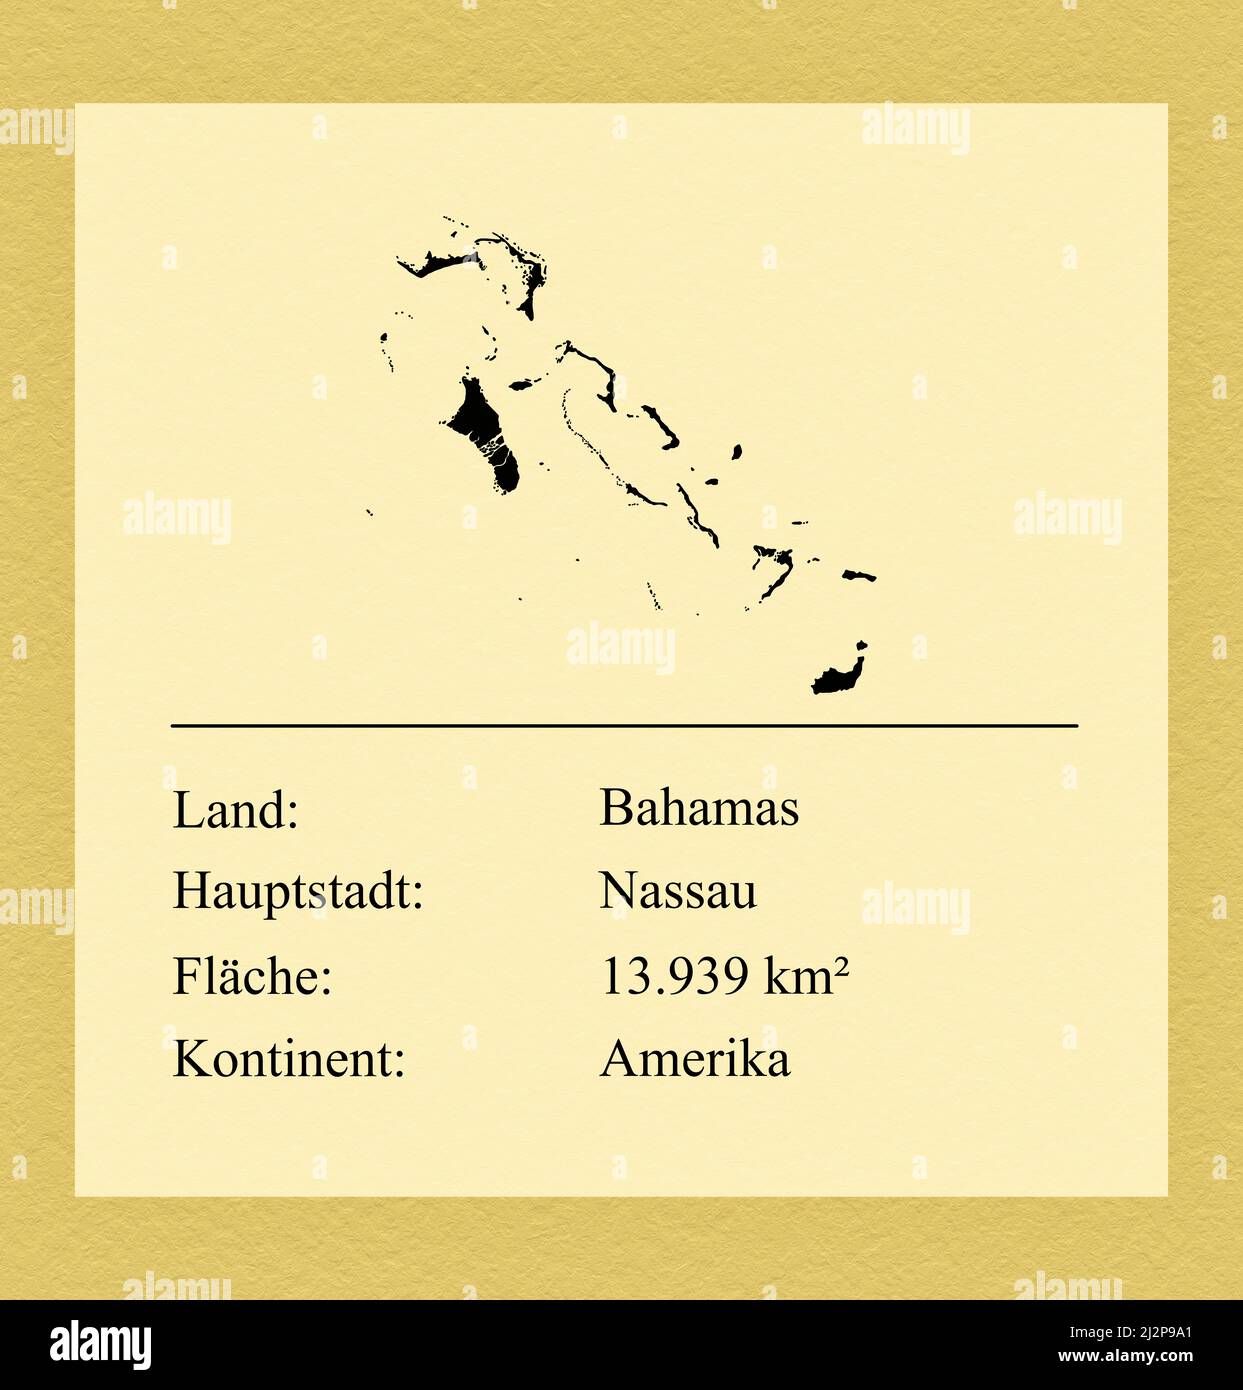 Umrisse des Landes Bahamas, darunter ein kleiner Steckbrief mit Ländernamen, Hauptstadt, Fläche und Kontinent Foto Stock